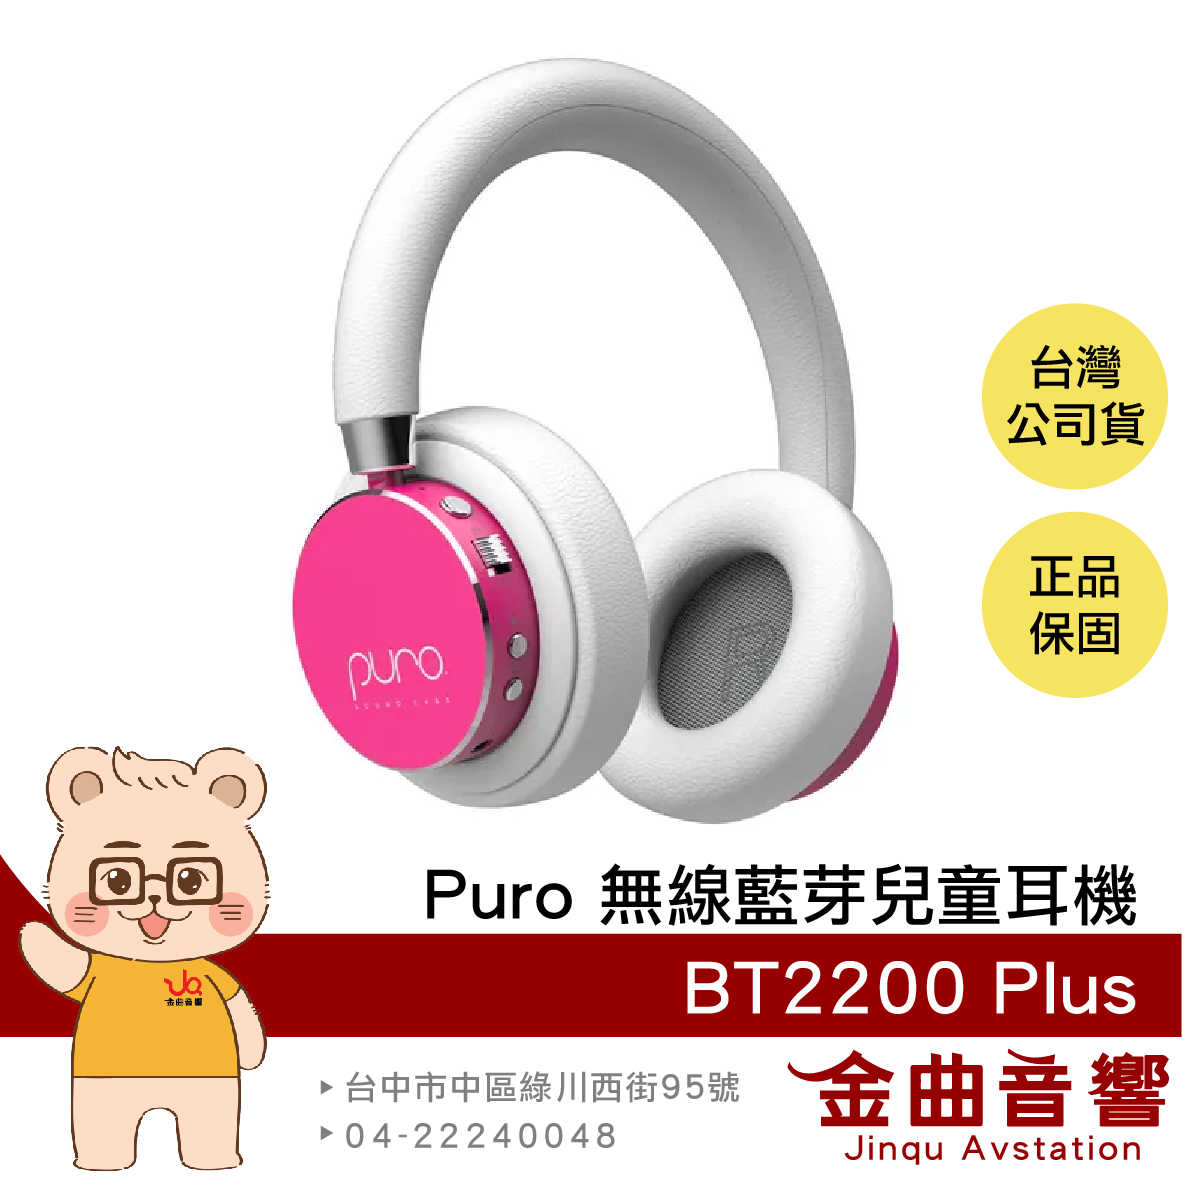 Puro BT2200 Plus 粉色 安全音量 音樂分享 可替換耳罩 耳罩式 無線 藍牙 兒童耳機 | 金曲音響